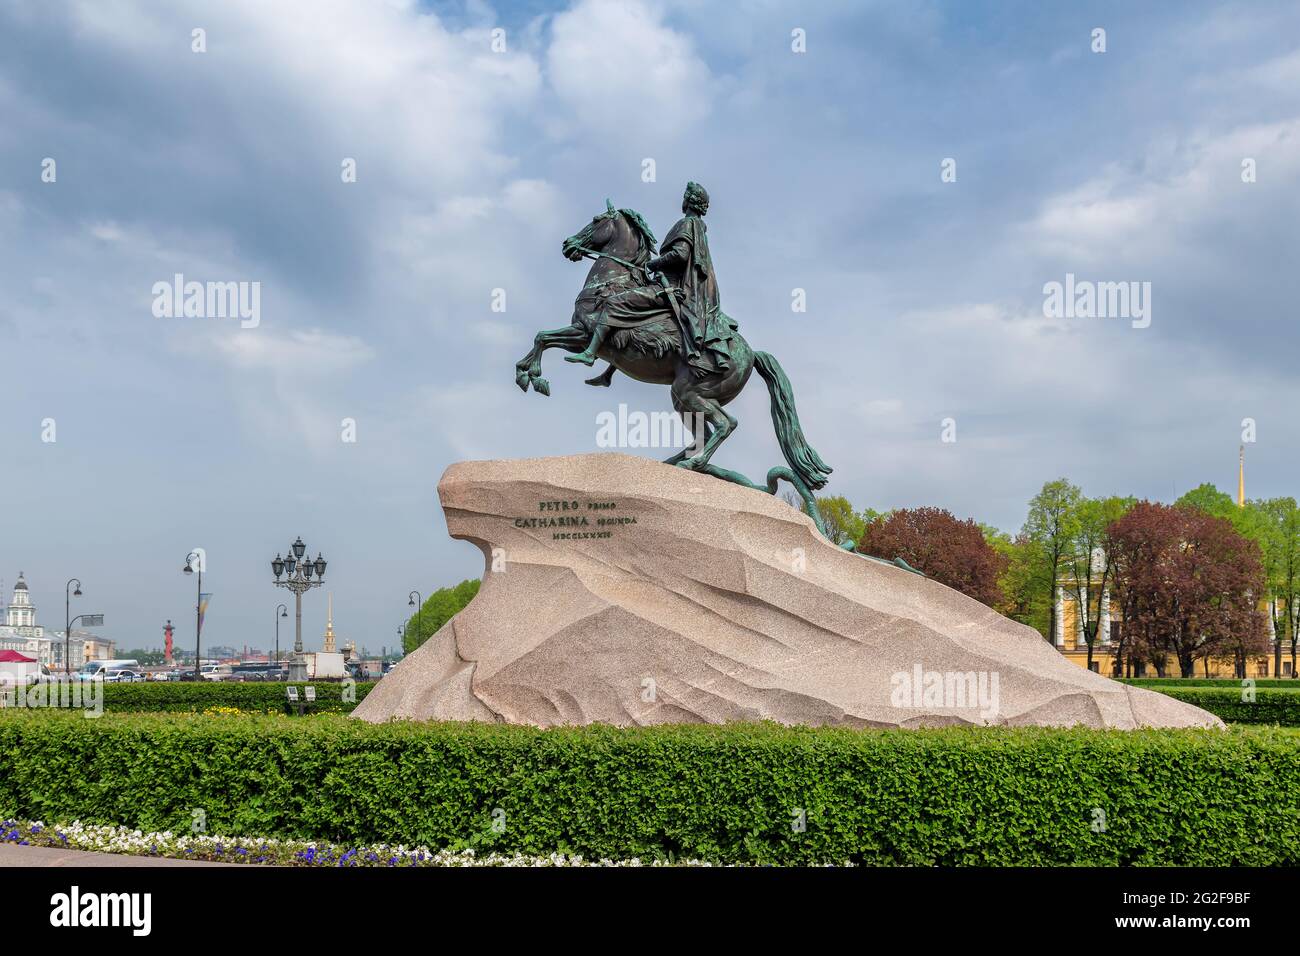 Statue de Pierre le Grand sur la place du Sénat, Saint-Pétersbourg, Russie. Banque D'Images